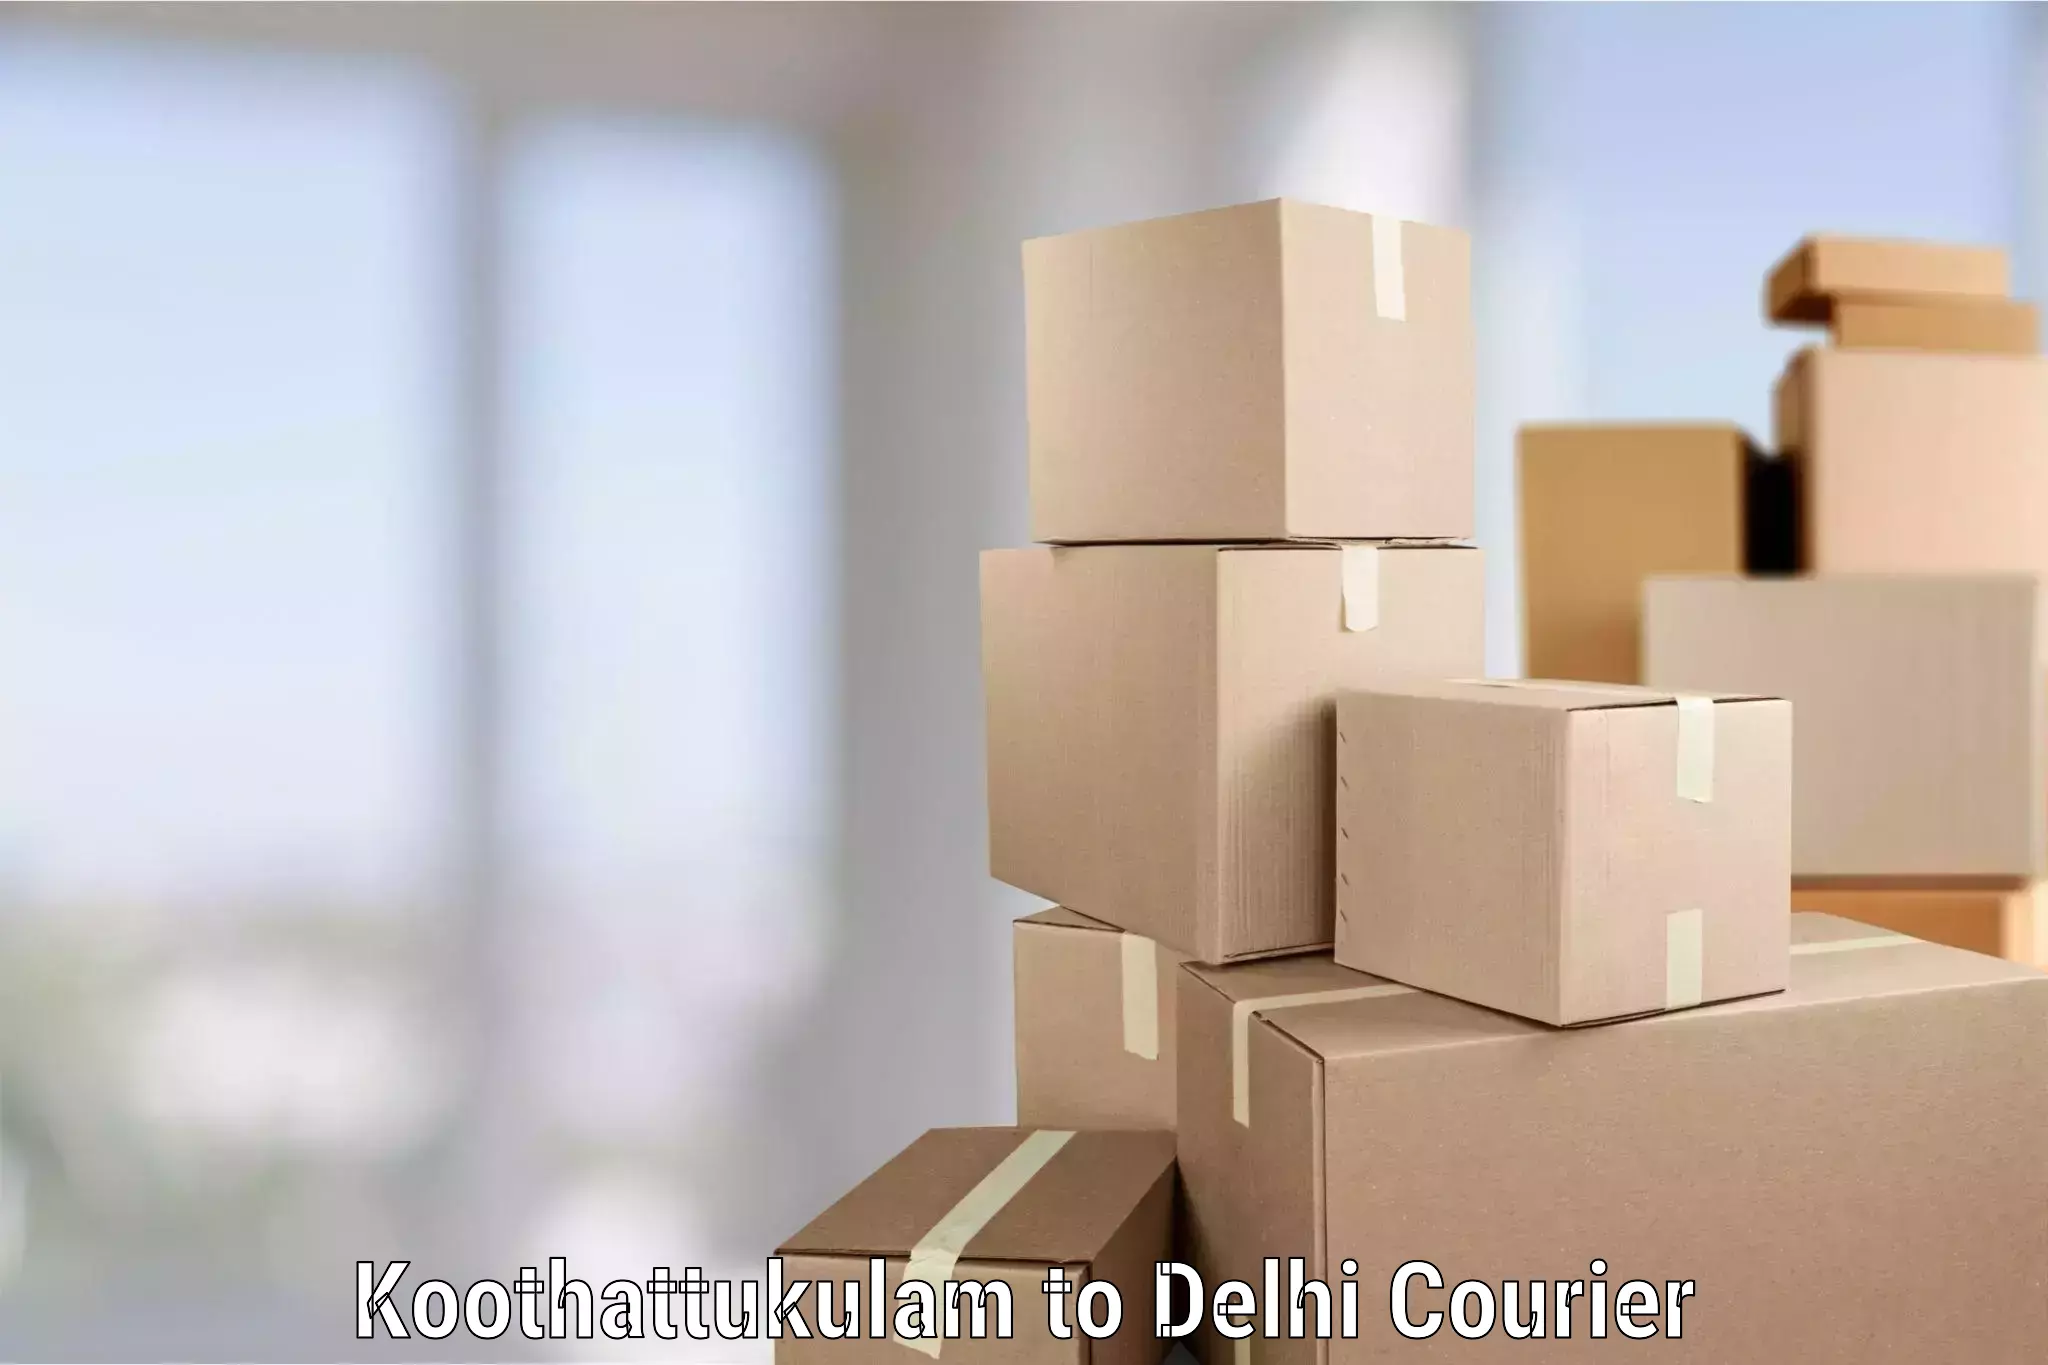 Hassle-free relocation Koothattukulam to Jawaharlal Nehru University New Delhi